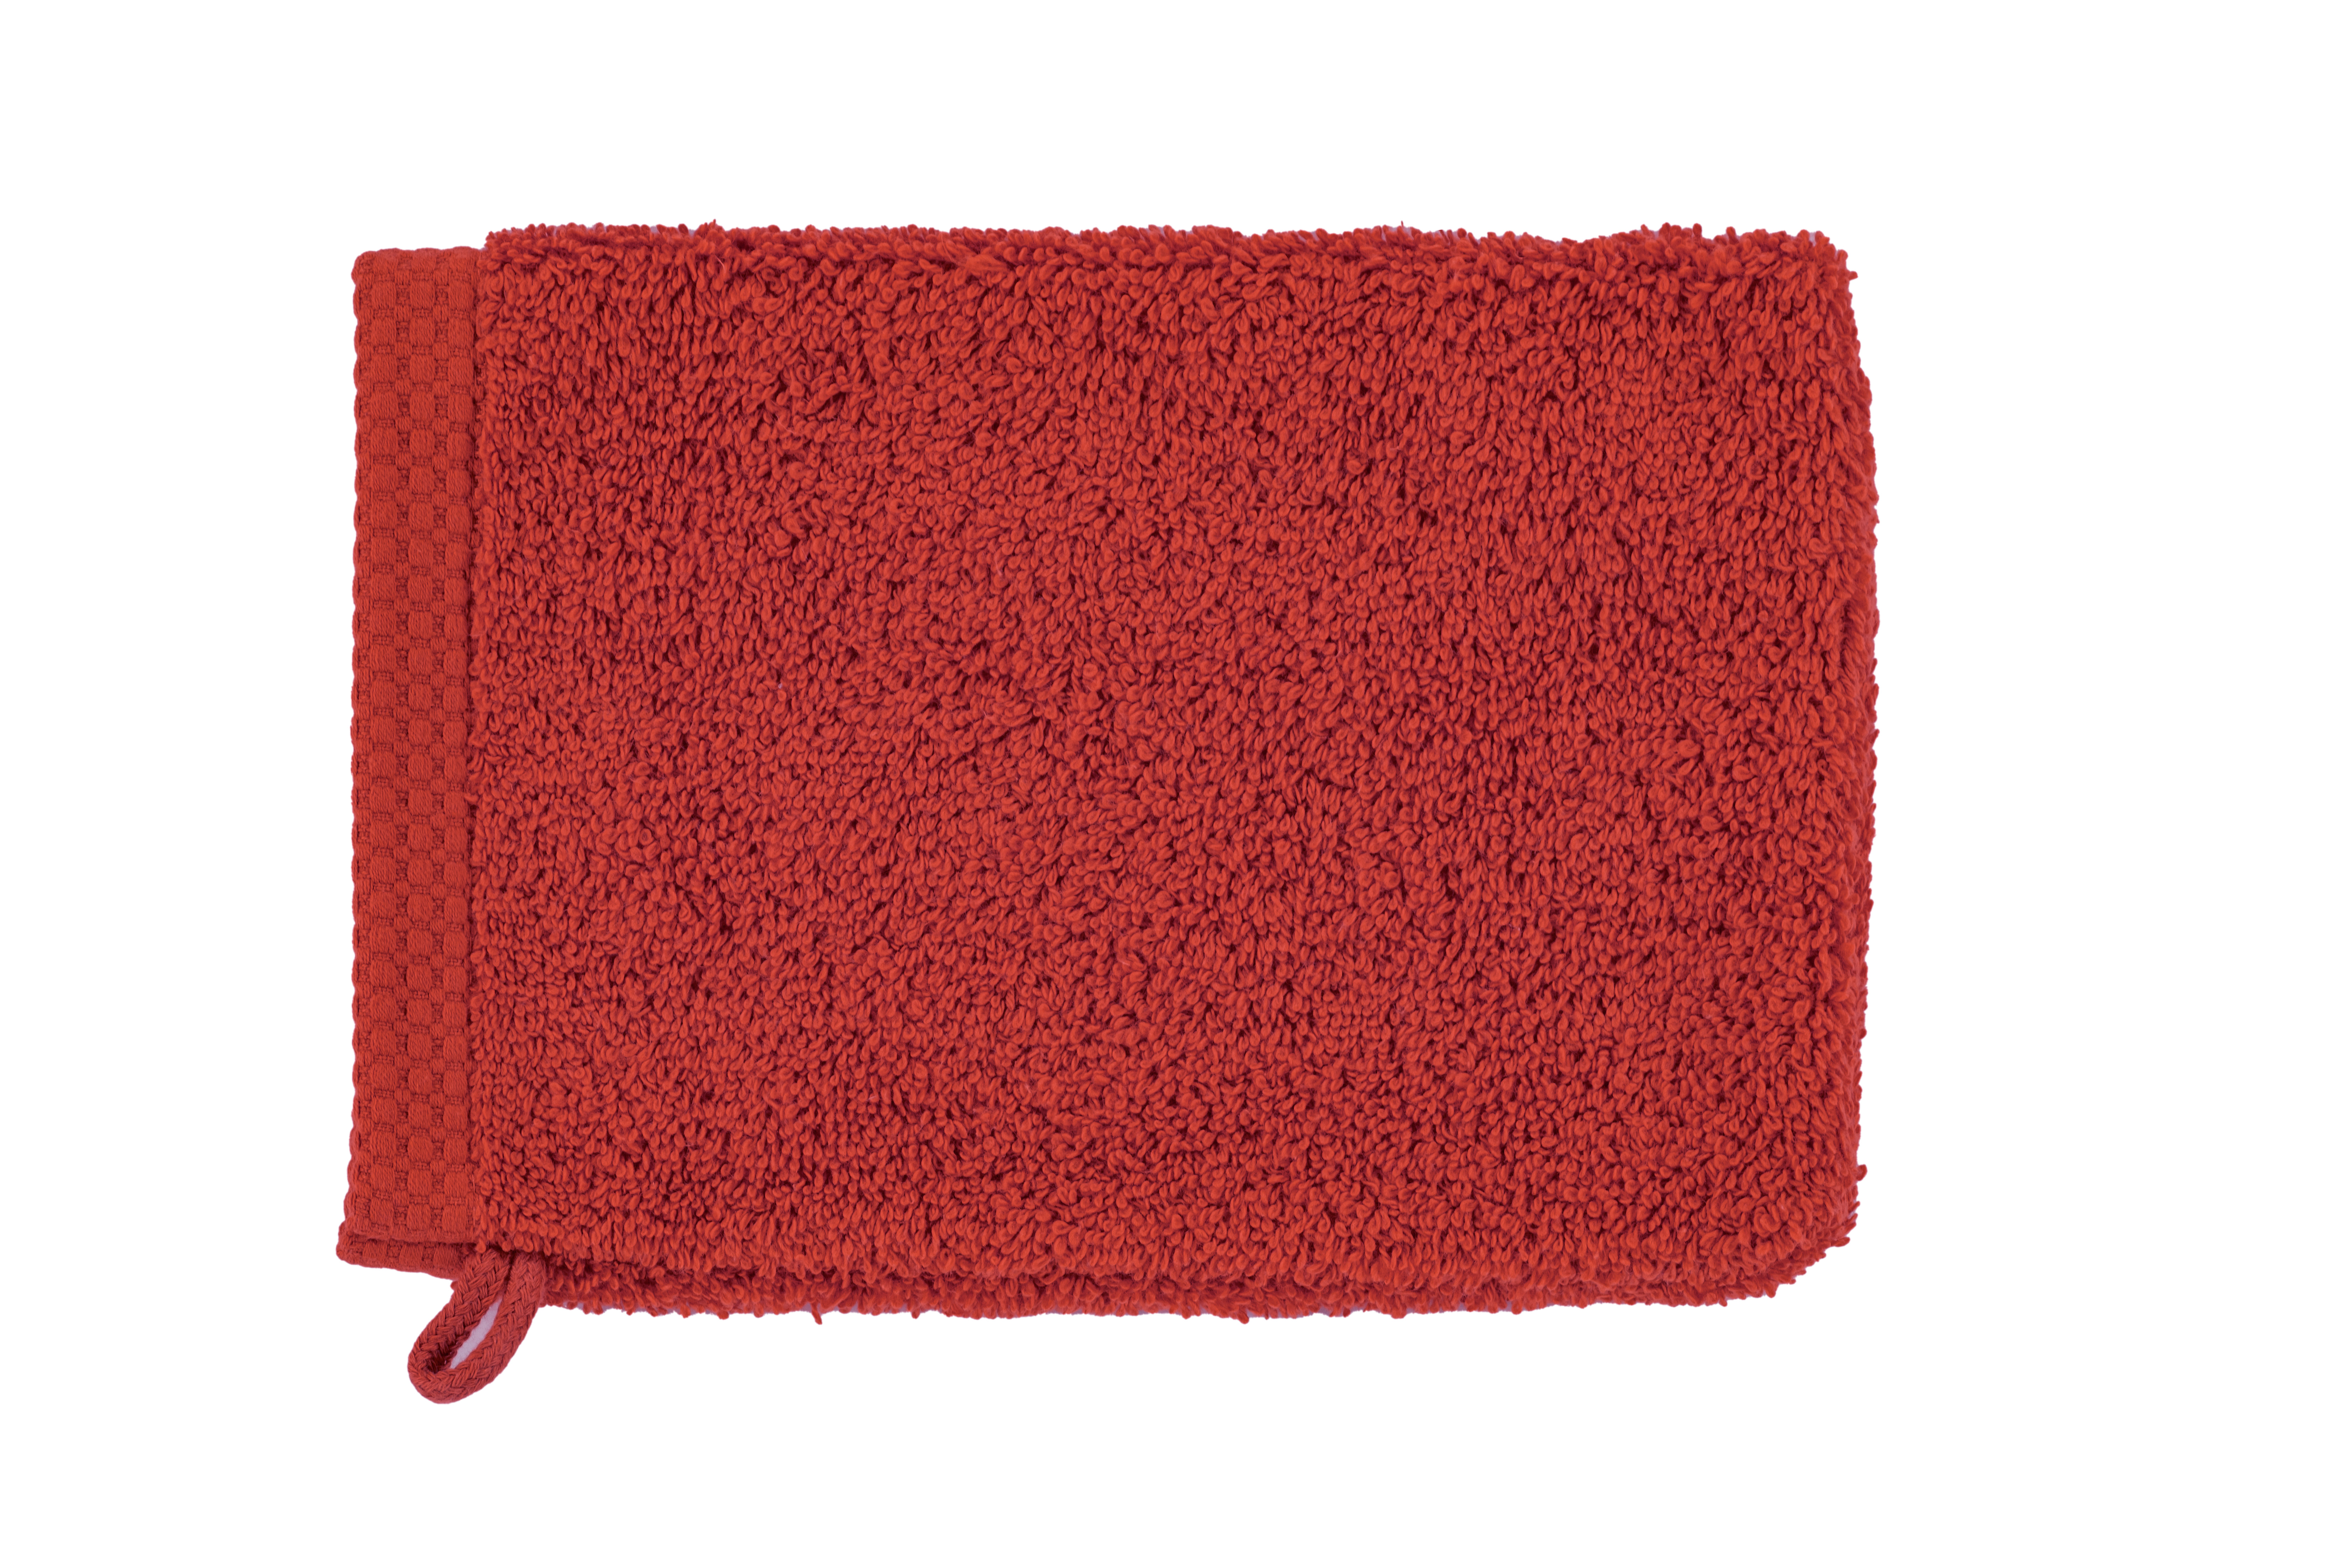 Gant de toilette DELUX 15x21cm - set/2, red